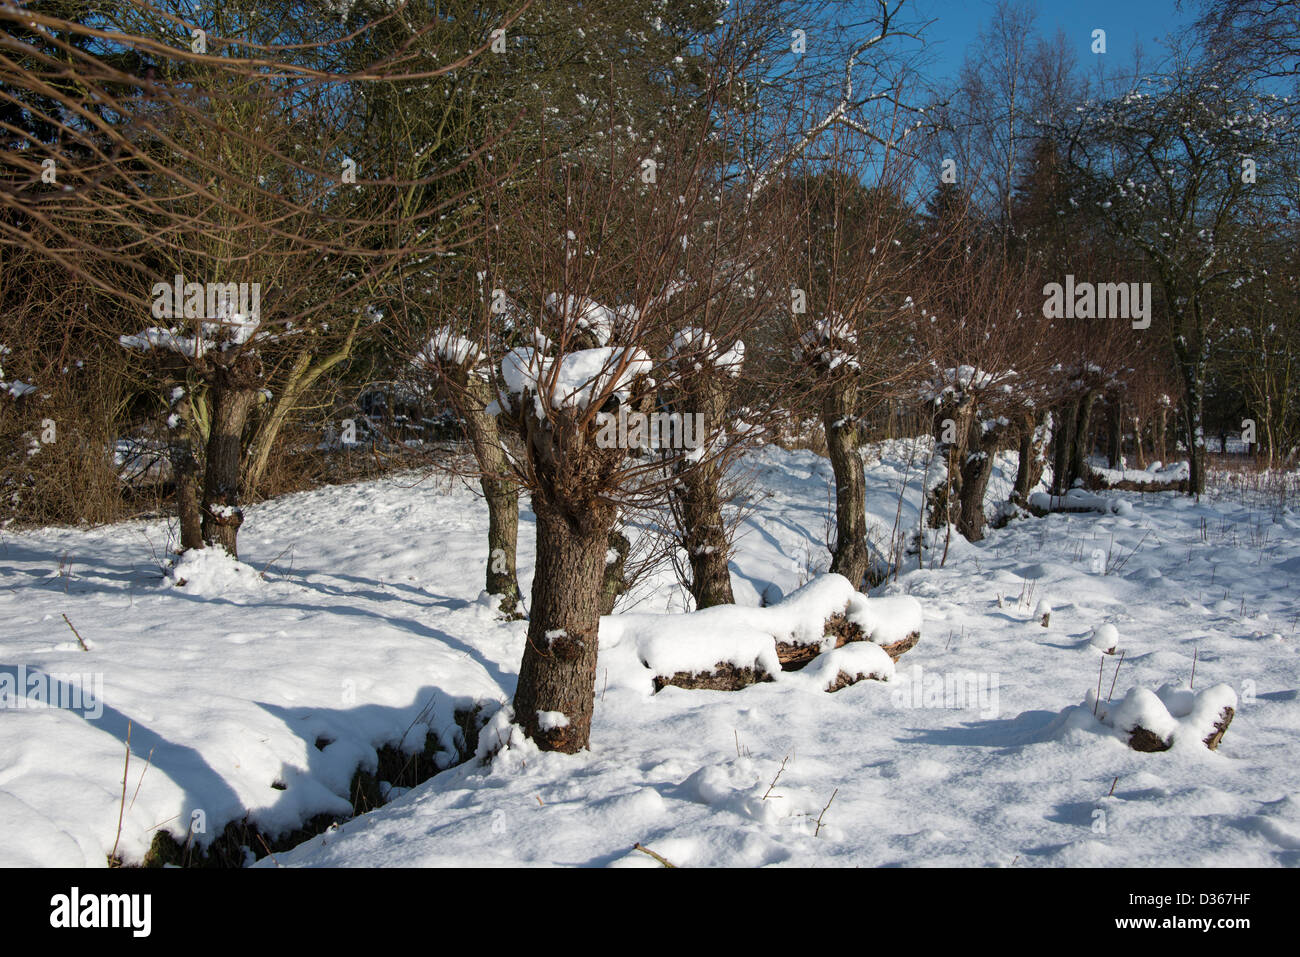 Paesaggio invernale con neve e pollard willow vicino all'acqua Foto Stock